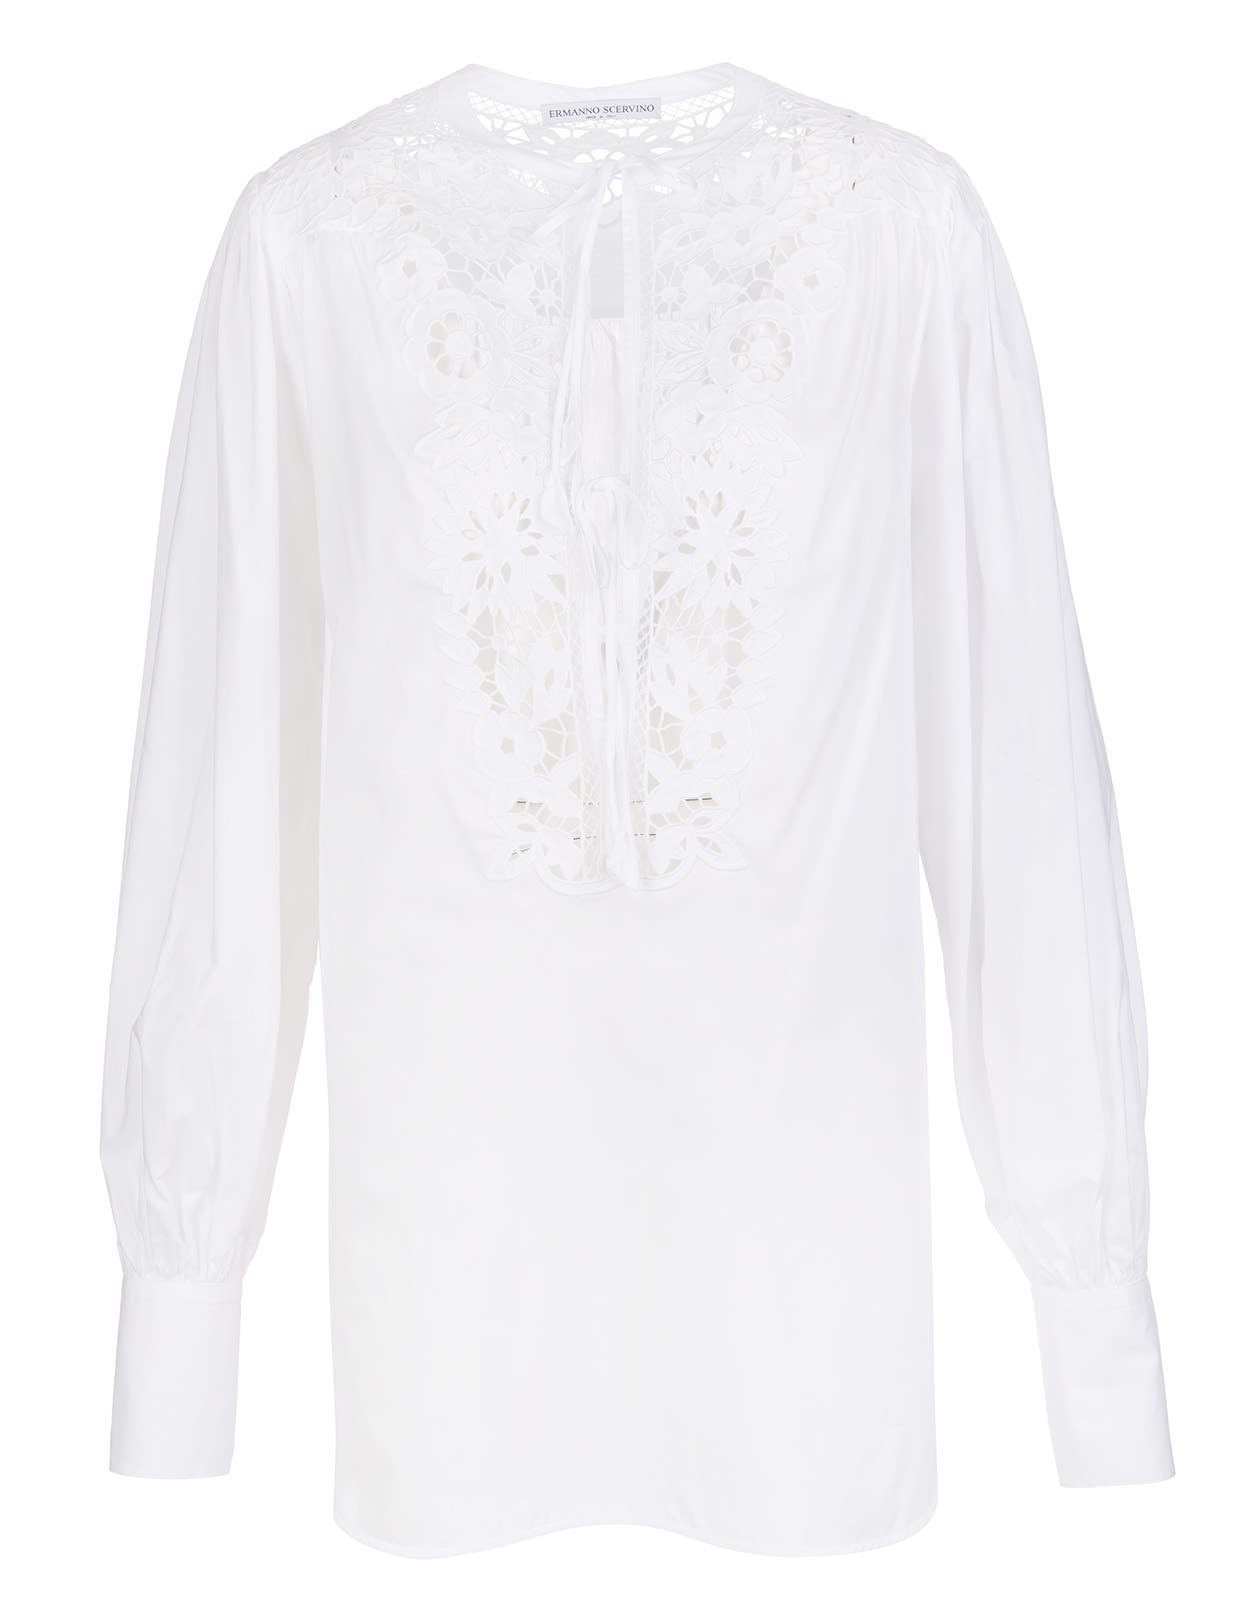 Ermanno Scervino White Over Shirt With Intaglio Embroidery